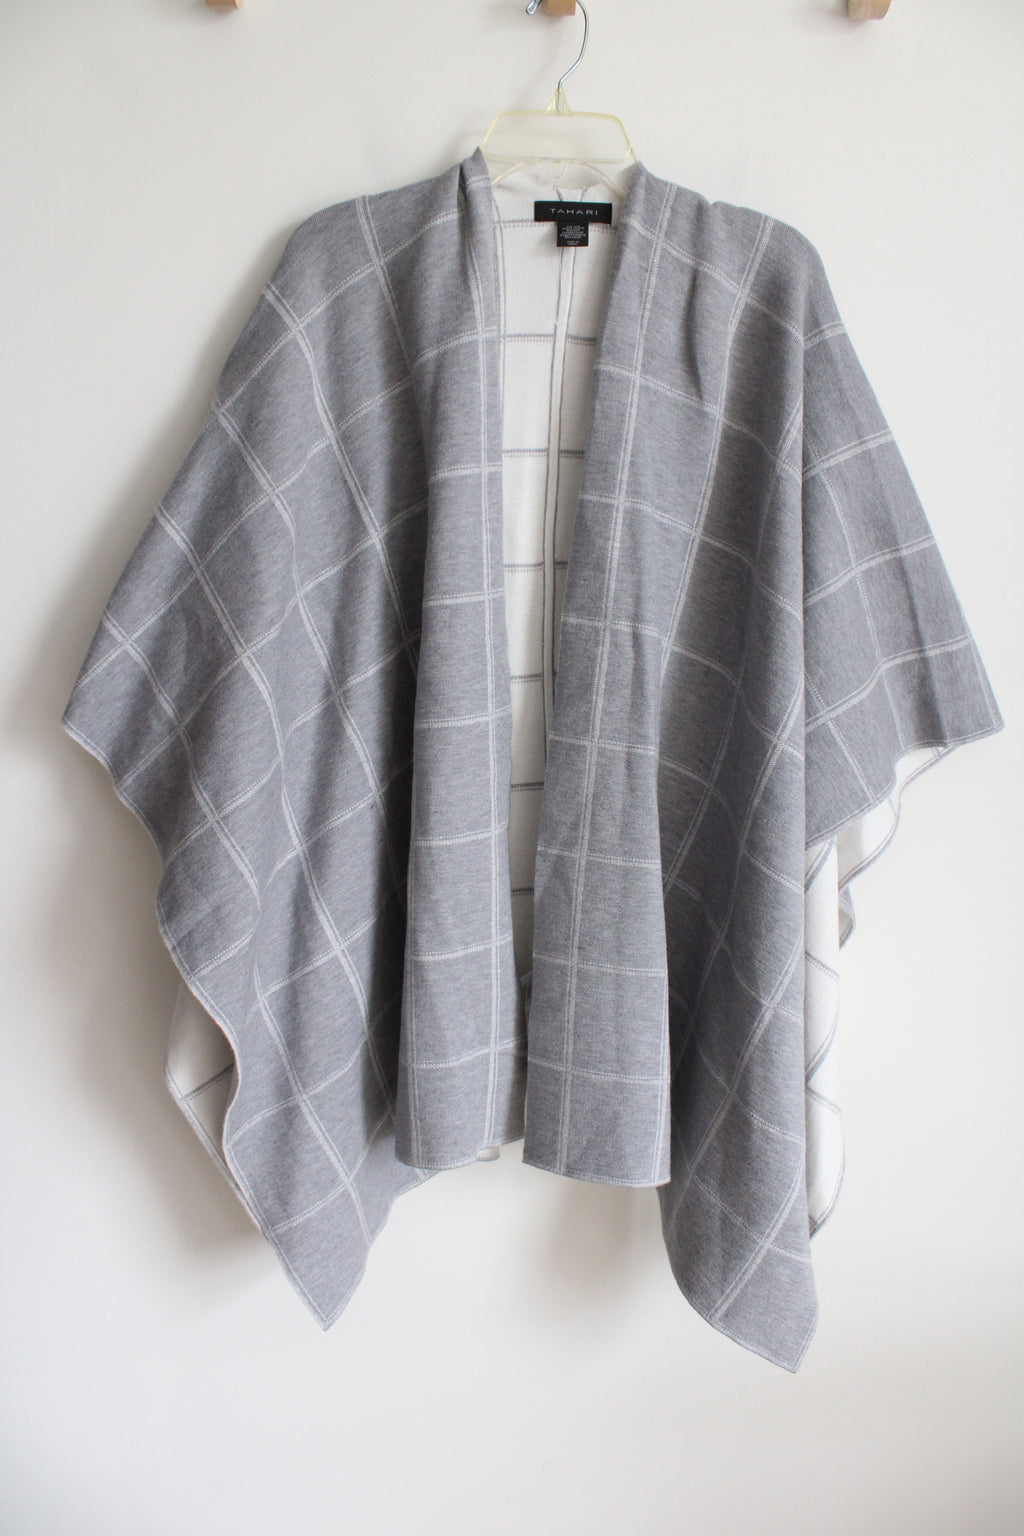 Tahari Gray White Windowpane Thick Knit Shawl | One Size